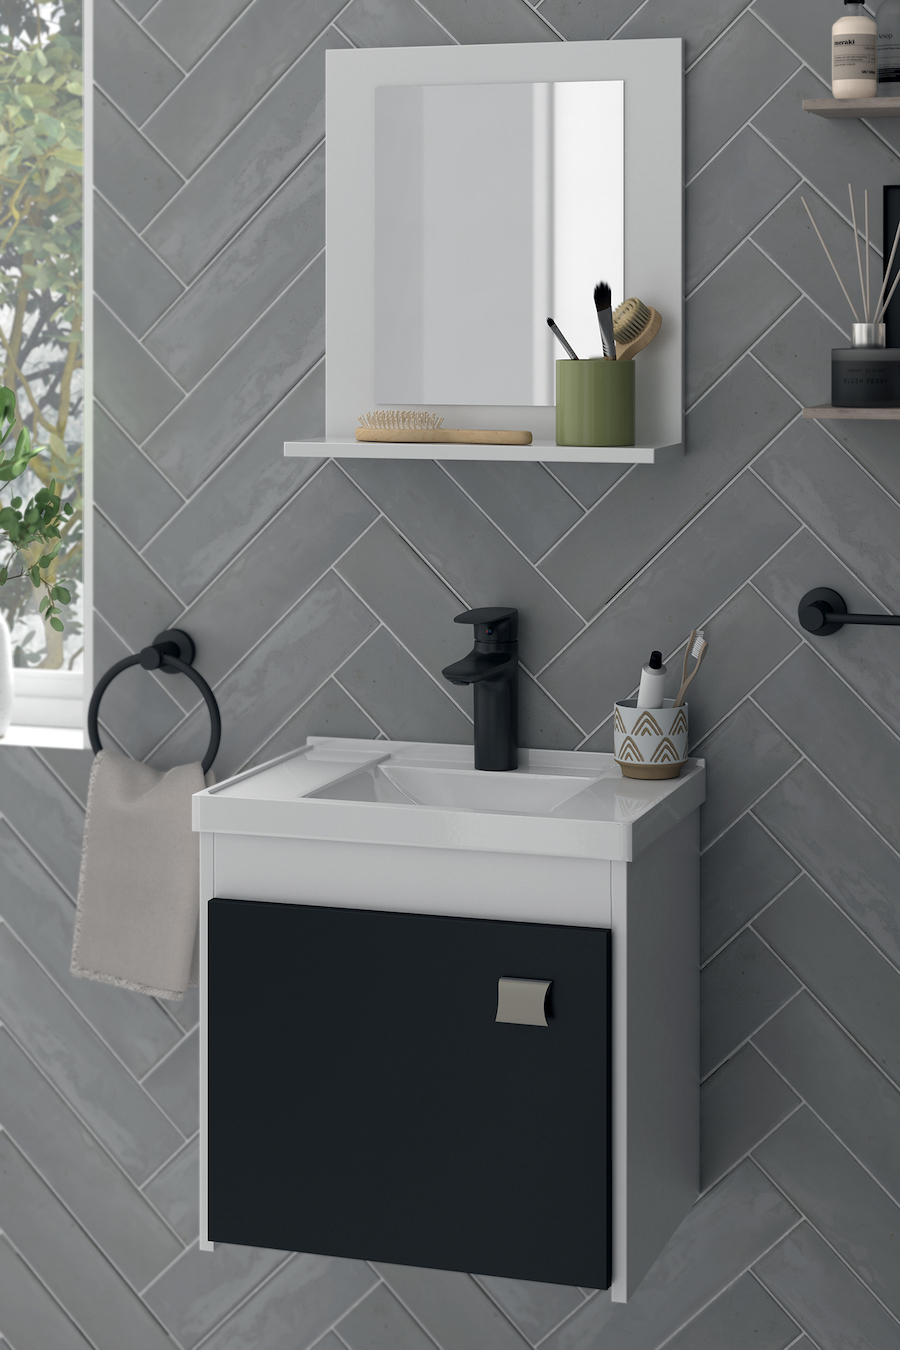 Detalle de un baño con cerámicos grises, vanitorio blanco con puerta negra, grifería negra y espejo con marco y repisa blanca.